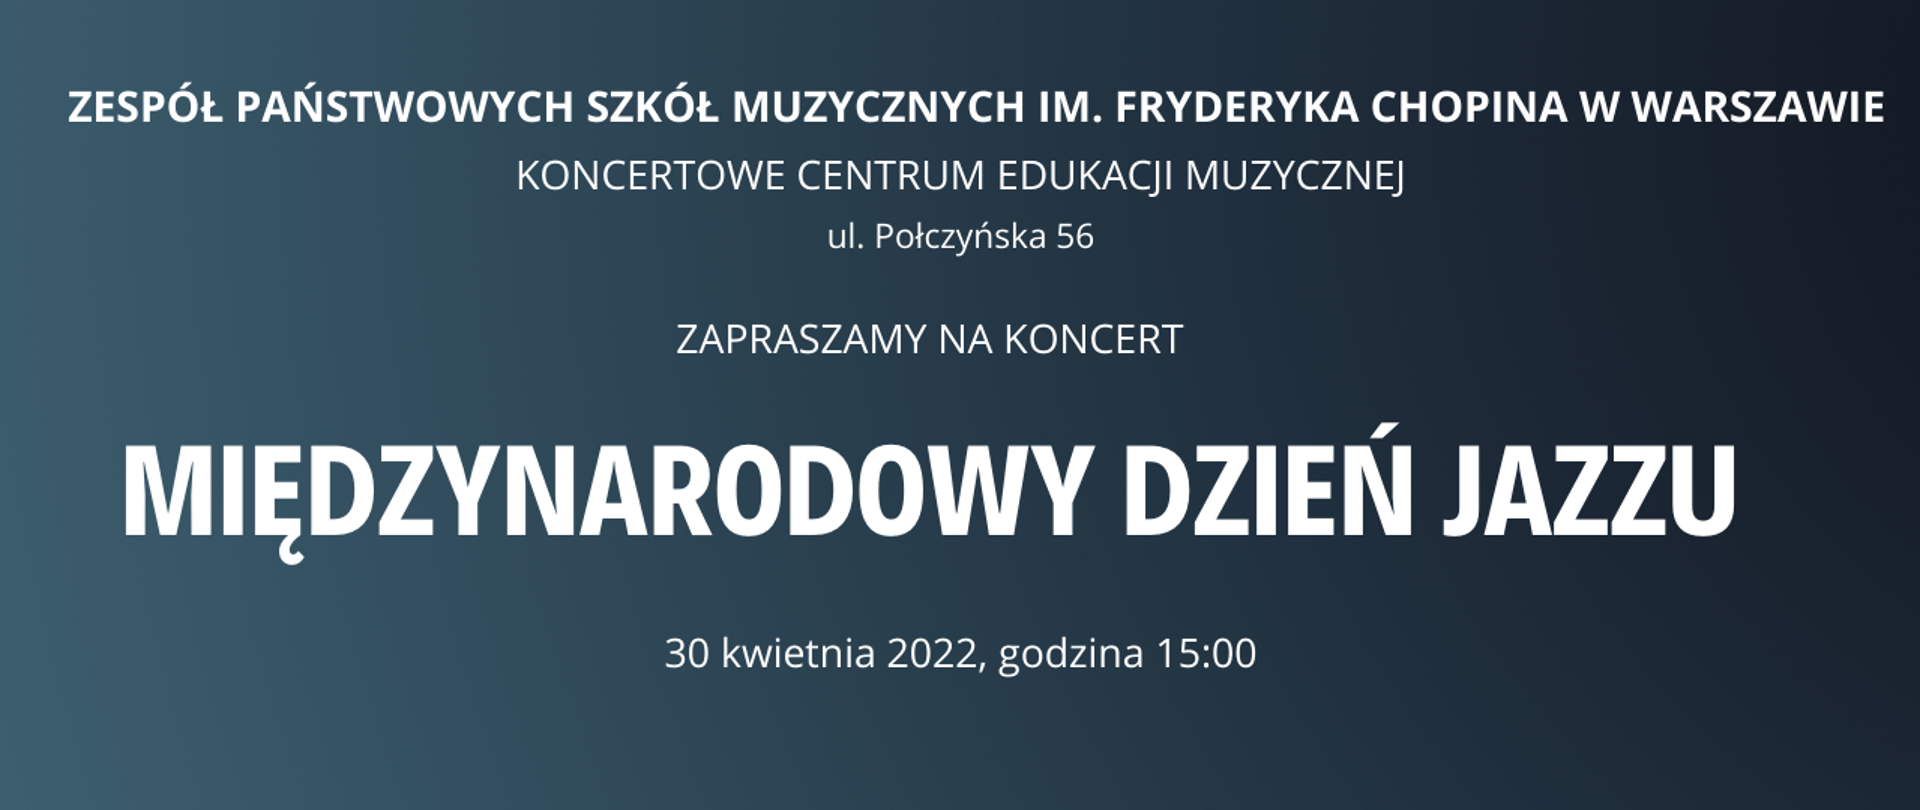 Afisz - na seledynowym tle napis: koncert, "Międzynarodowy dzień jazzu", 30 kwietnia 2022 godz 15.00, ul. Połczyńska 56, Warszawa